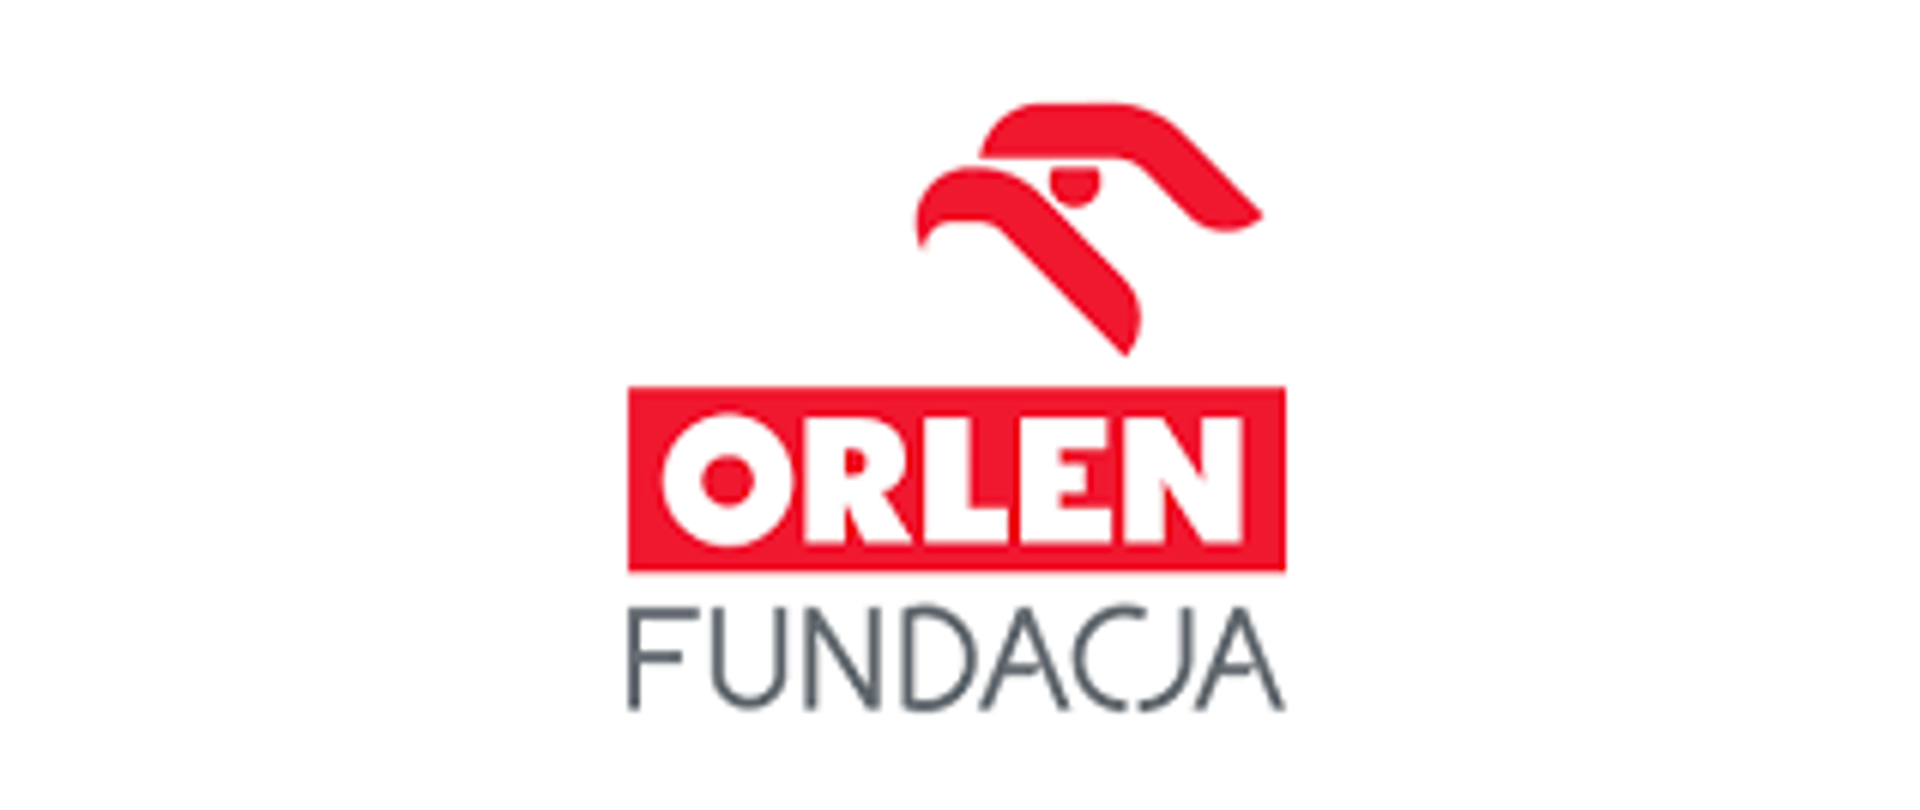 Zdjęcie przedstawia logo Fundacji Orlen